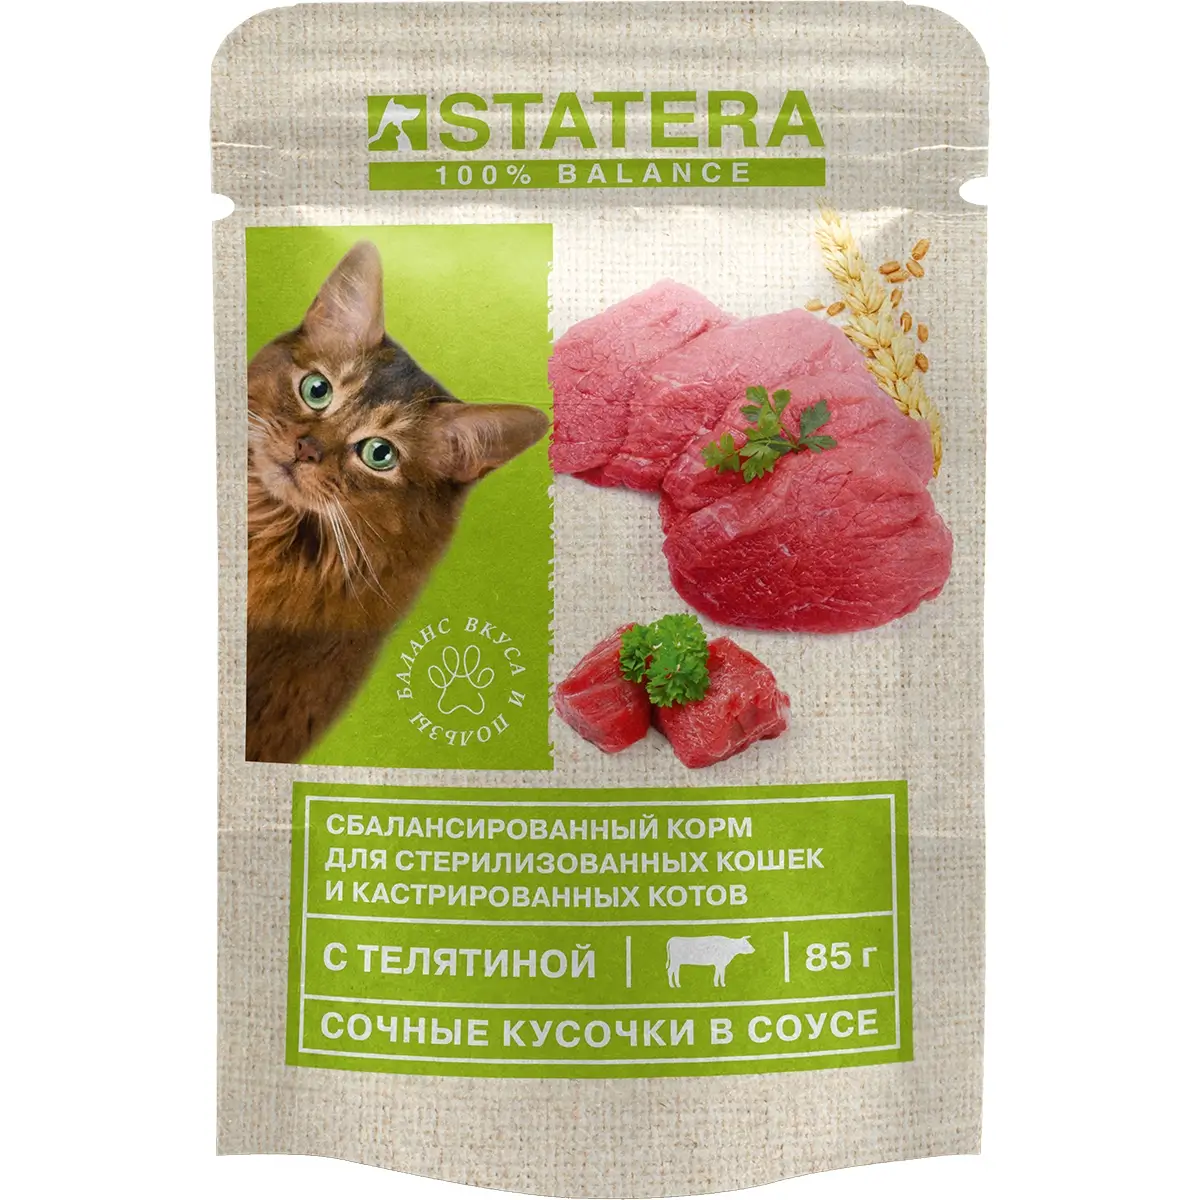 Консервированный корм Statera для кошек (С телятиной в соусе, пауч, 85г)